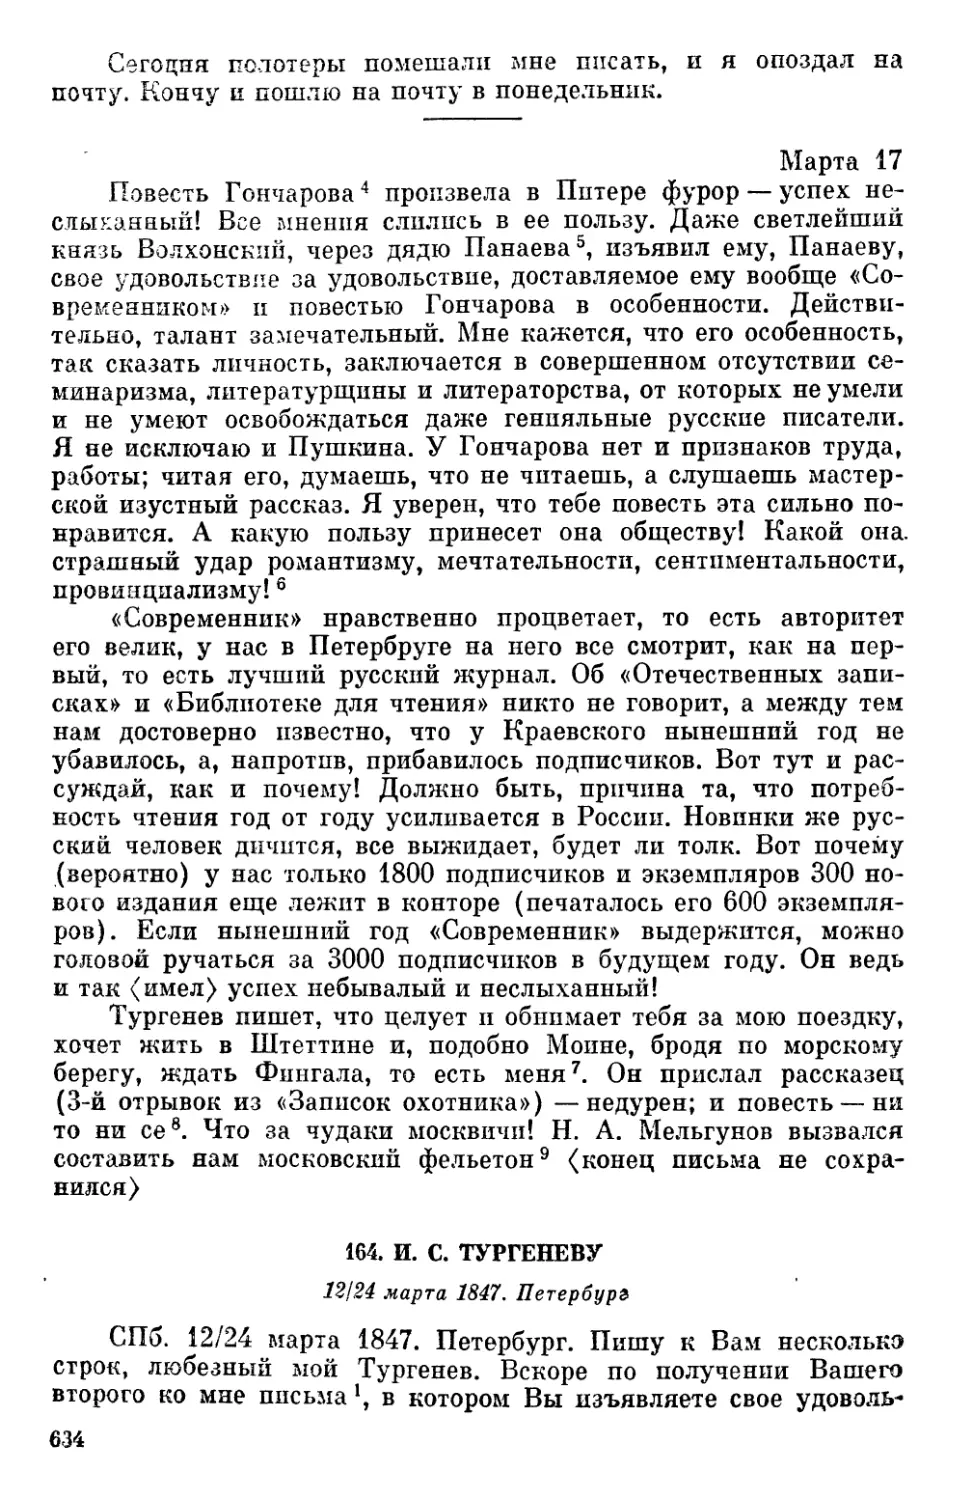 164. И. С. Тургеневу. 12/24 марта 1847